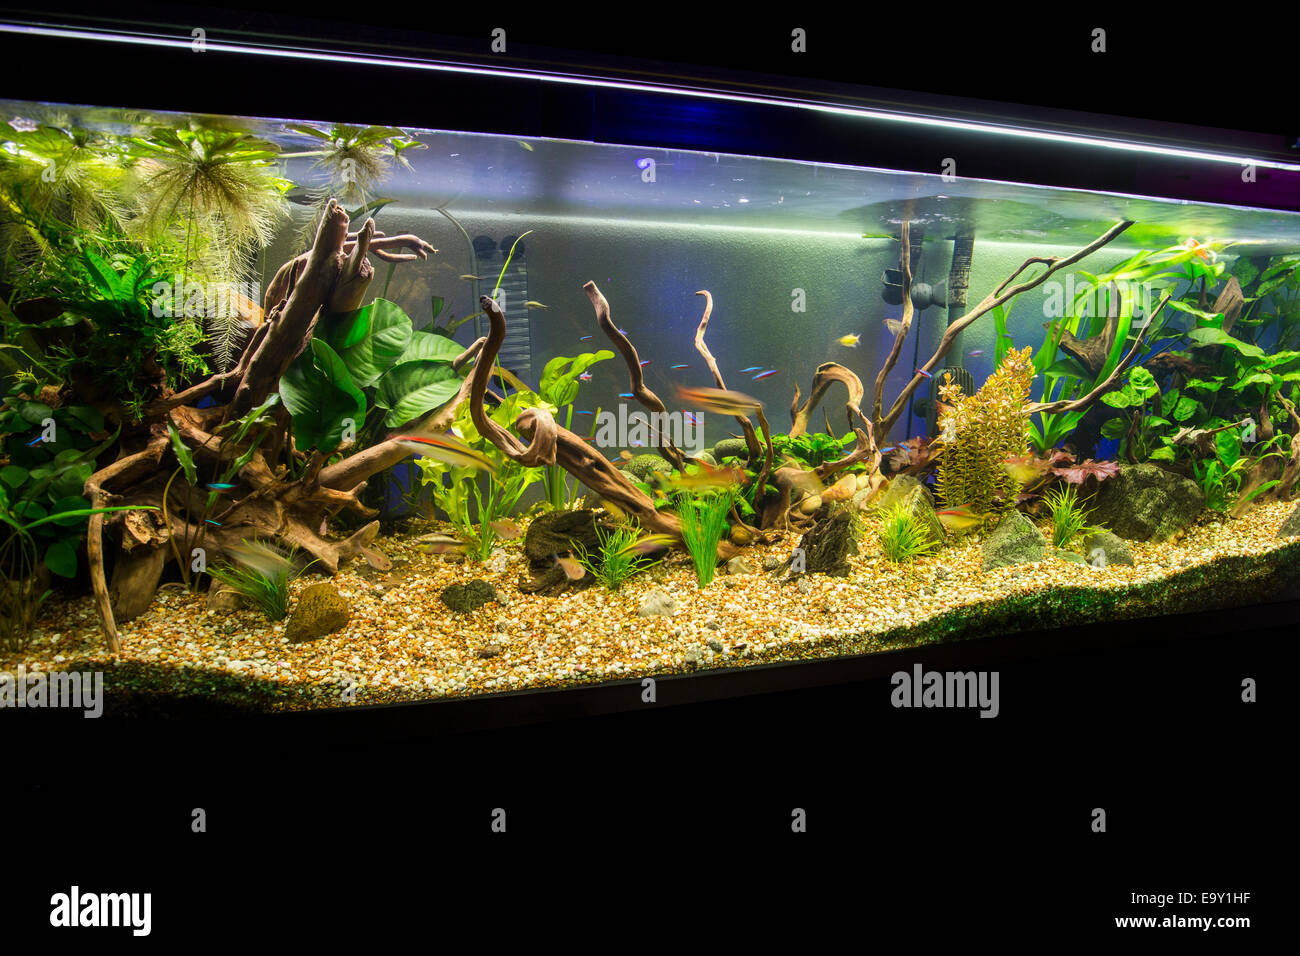 https://c8.alamy.com/comp/E9Y1HF/a-beautiful-planted-tropical-freshwater-aquarium-E9Y1HF.jpg